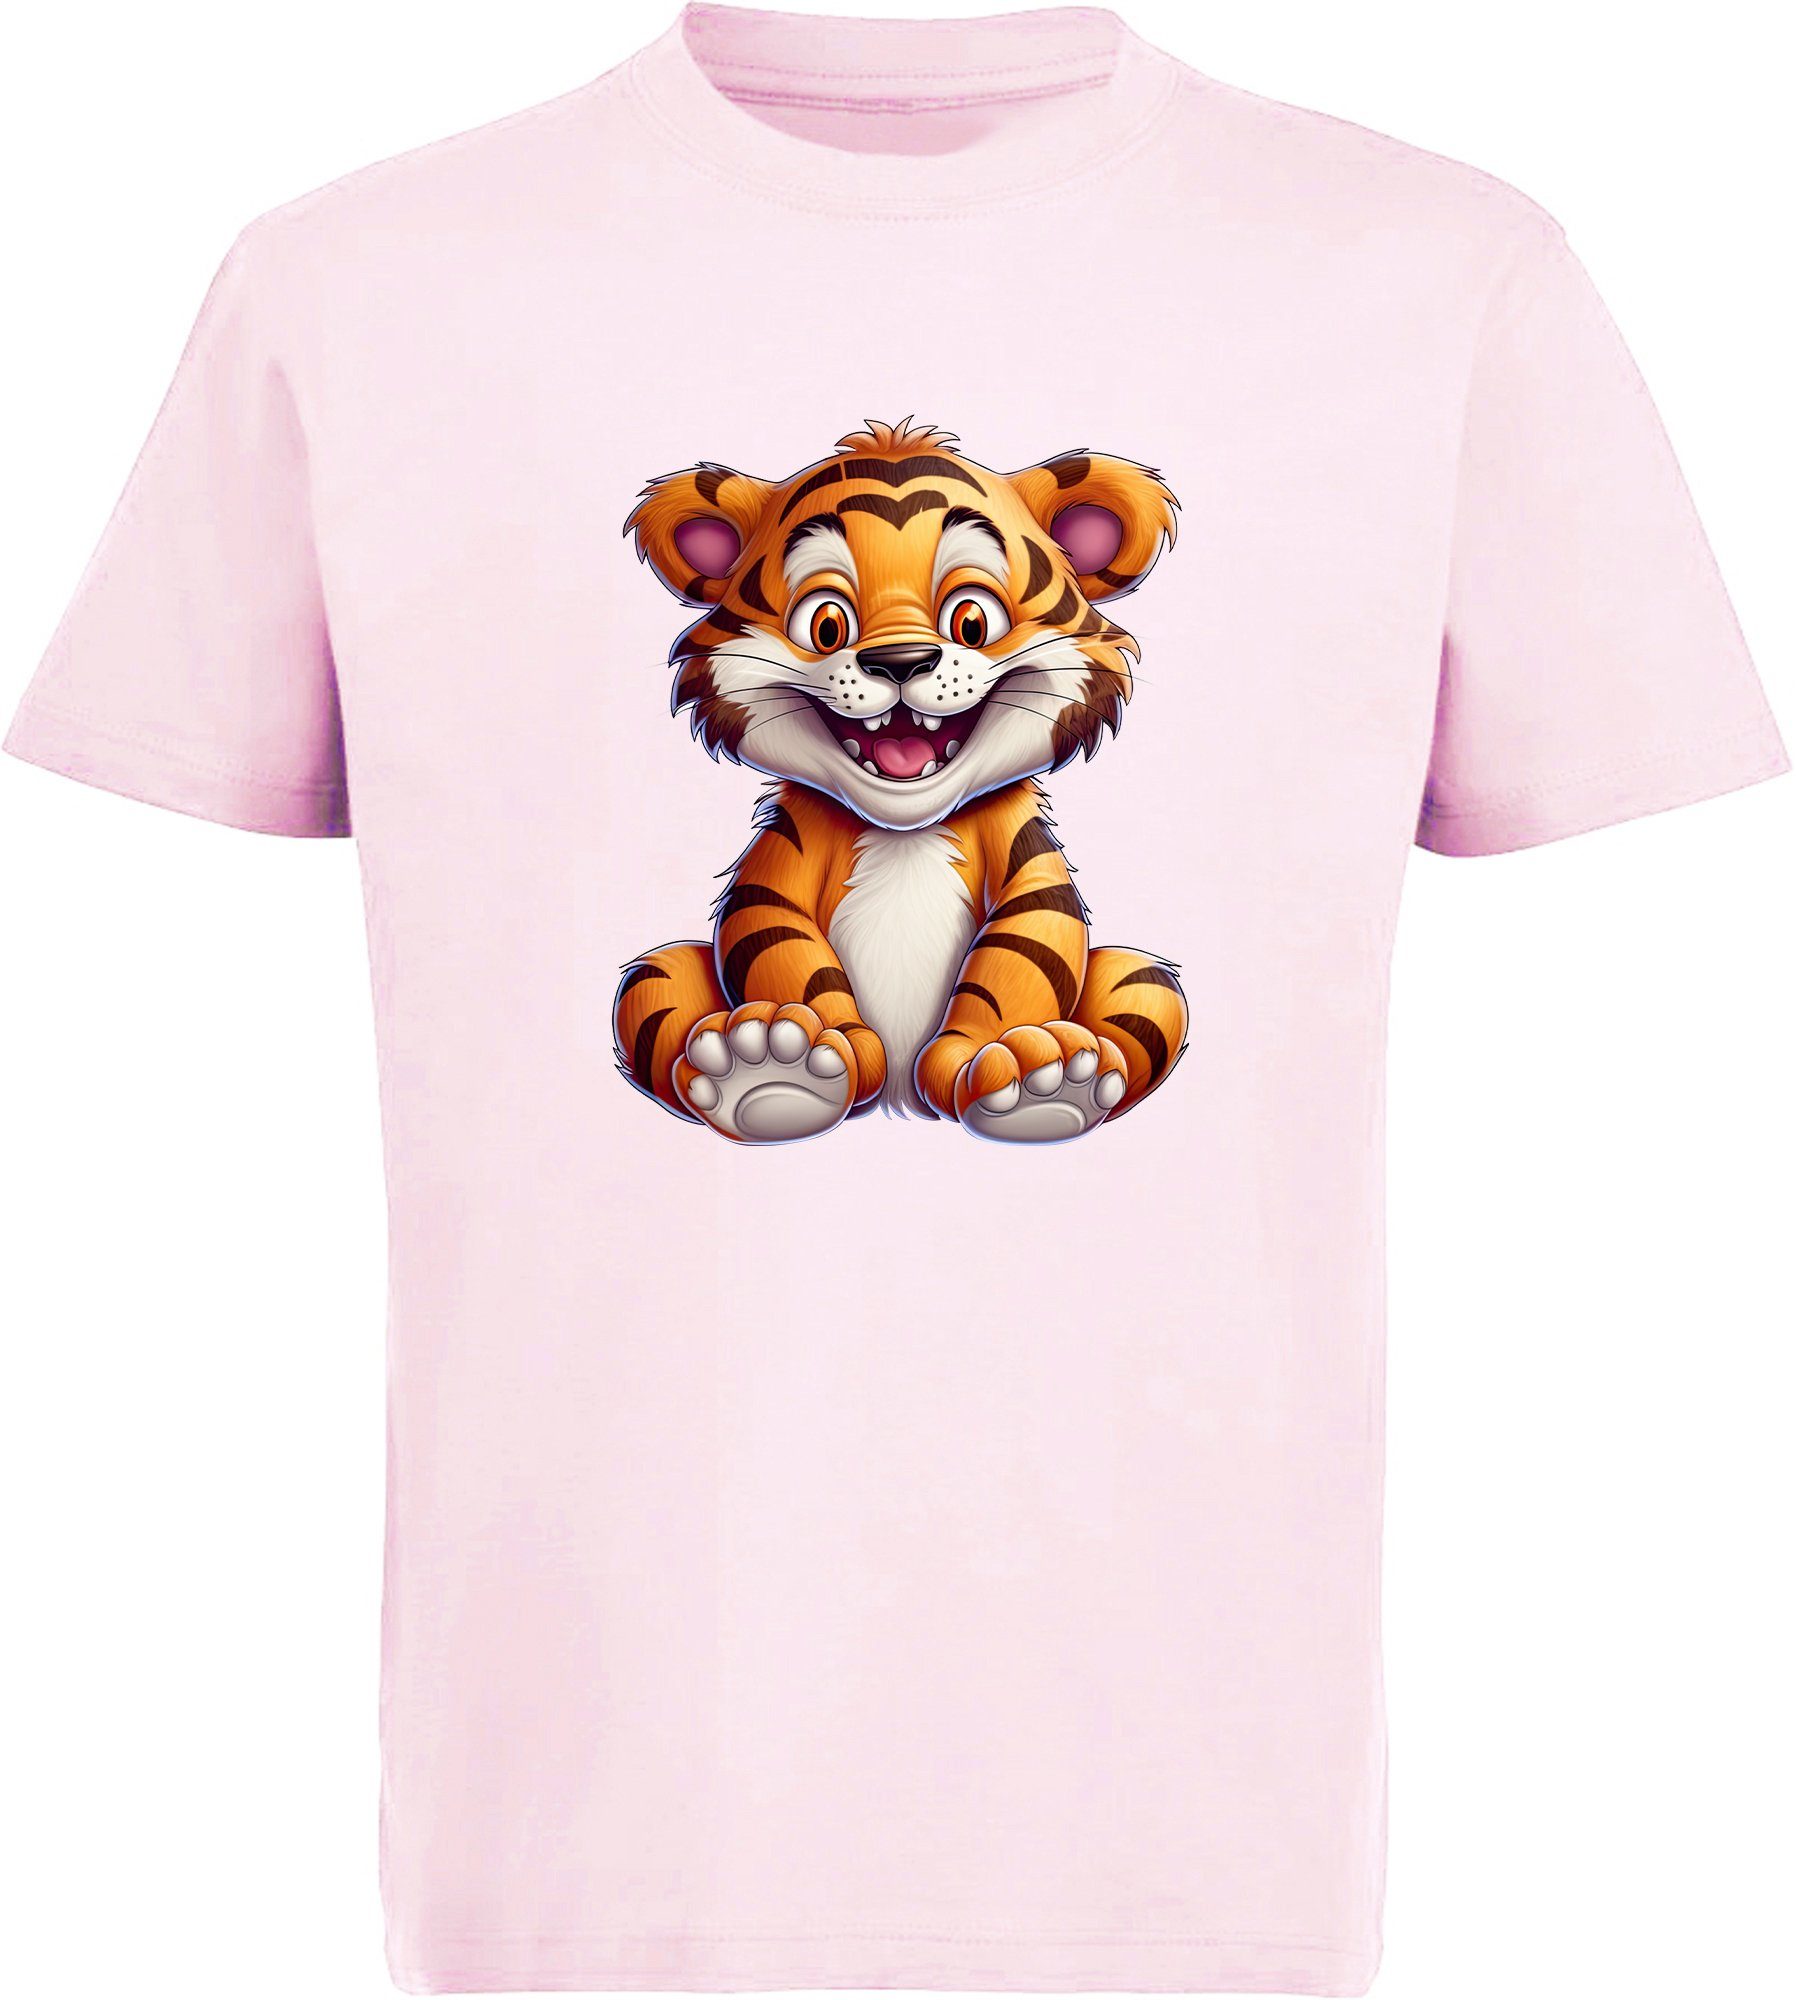 MyDesign24 T-Shirt Kinder Wildtier Print mit Tiger i278 rosa Shirt Baby bedruckt Baumwollshirt Aufdruck, 